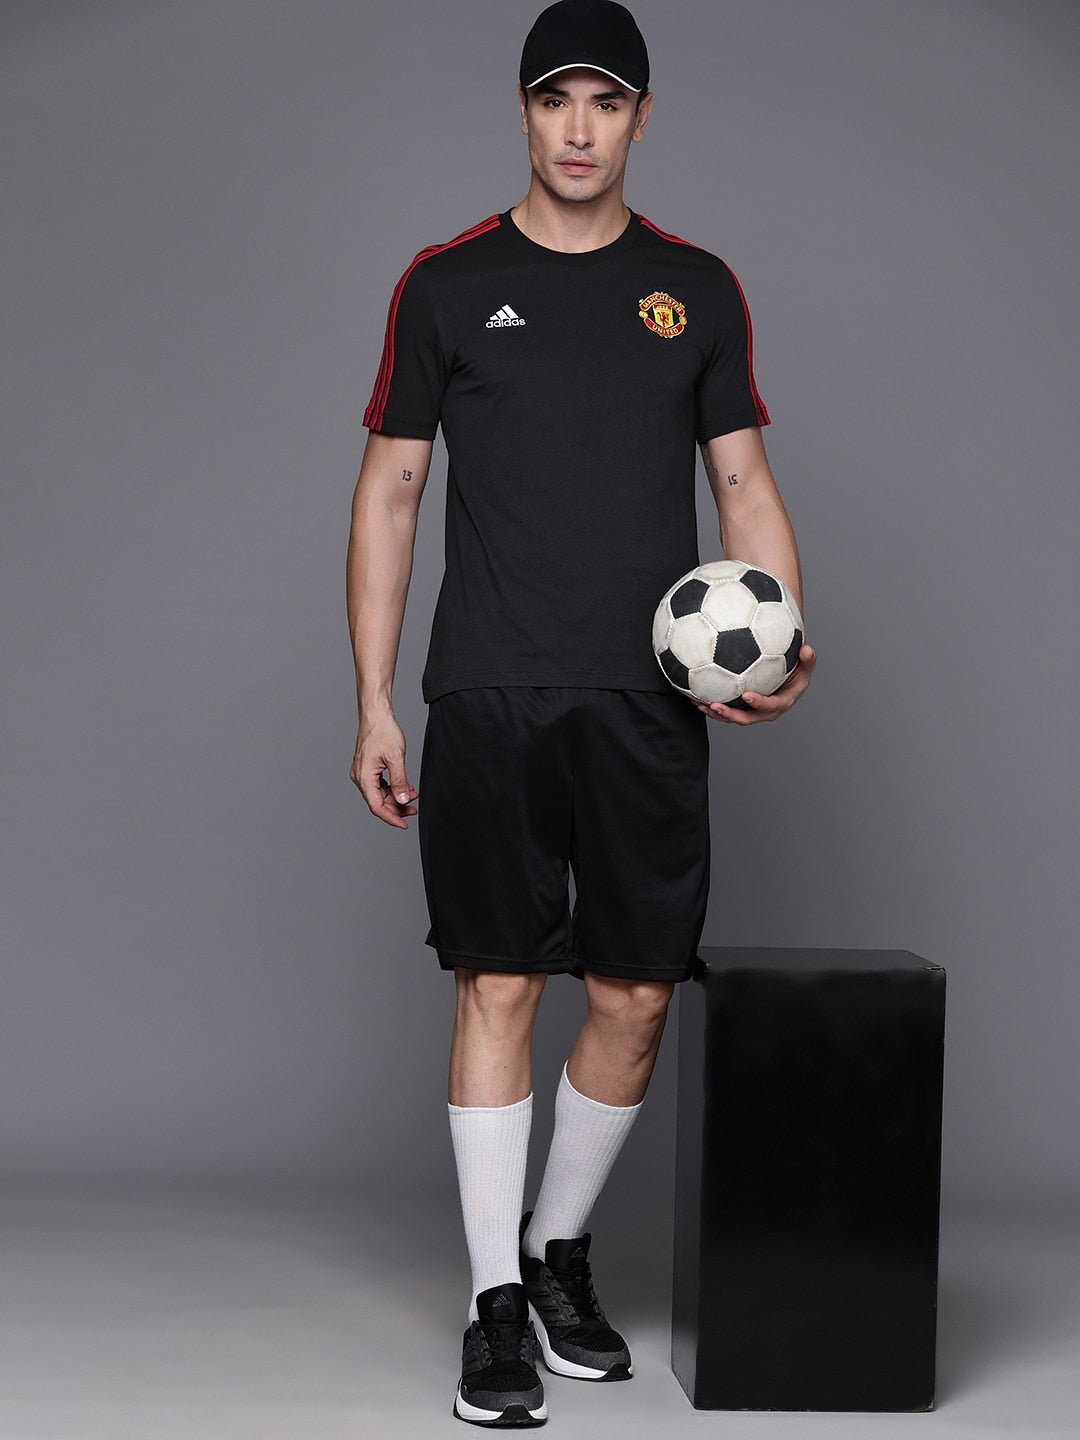 Adidas Men Manchester United FC DNA Pure Cotton Football T-shirt - Distacart